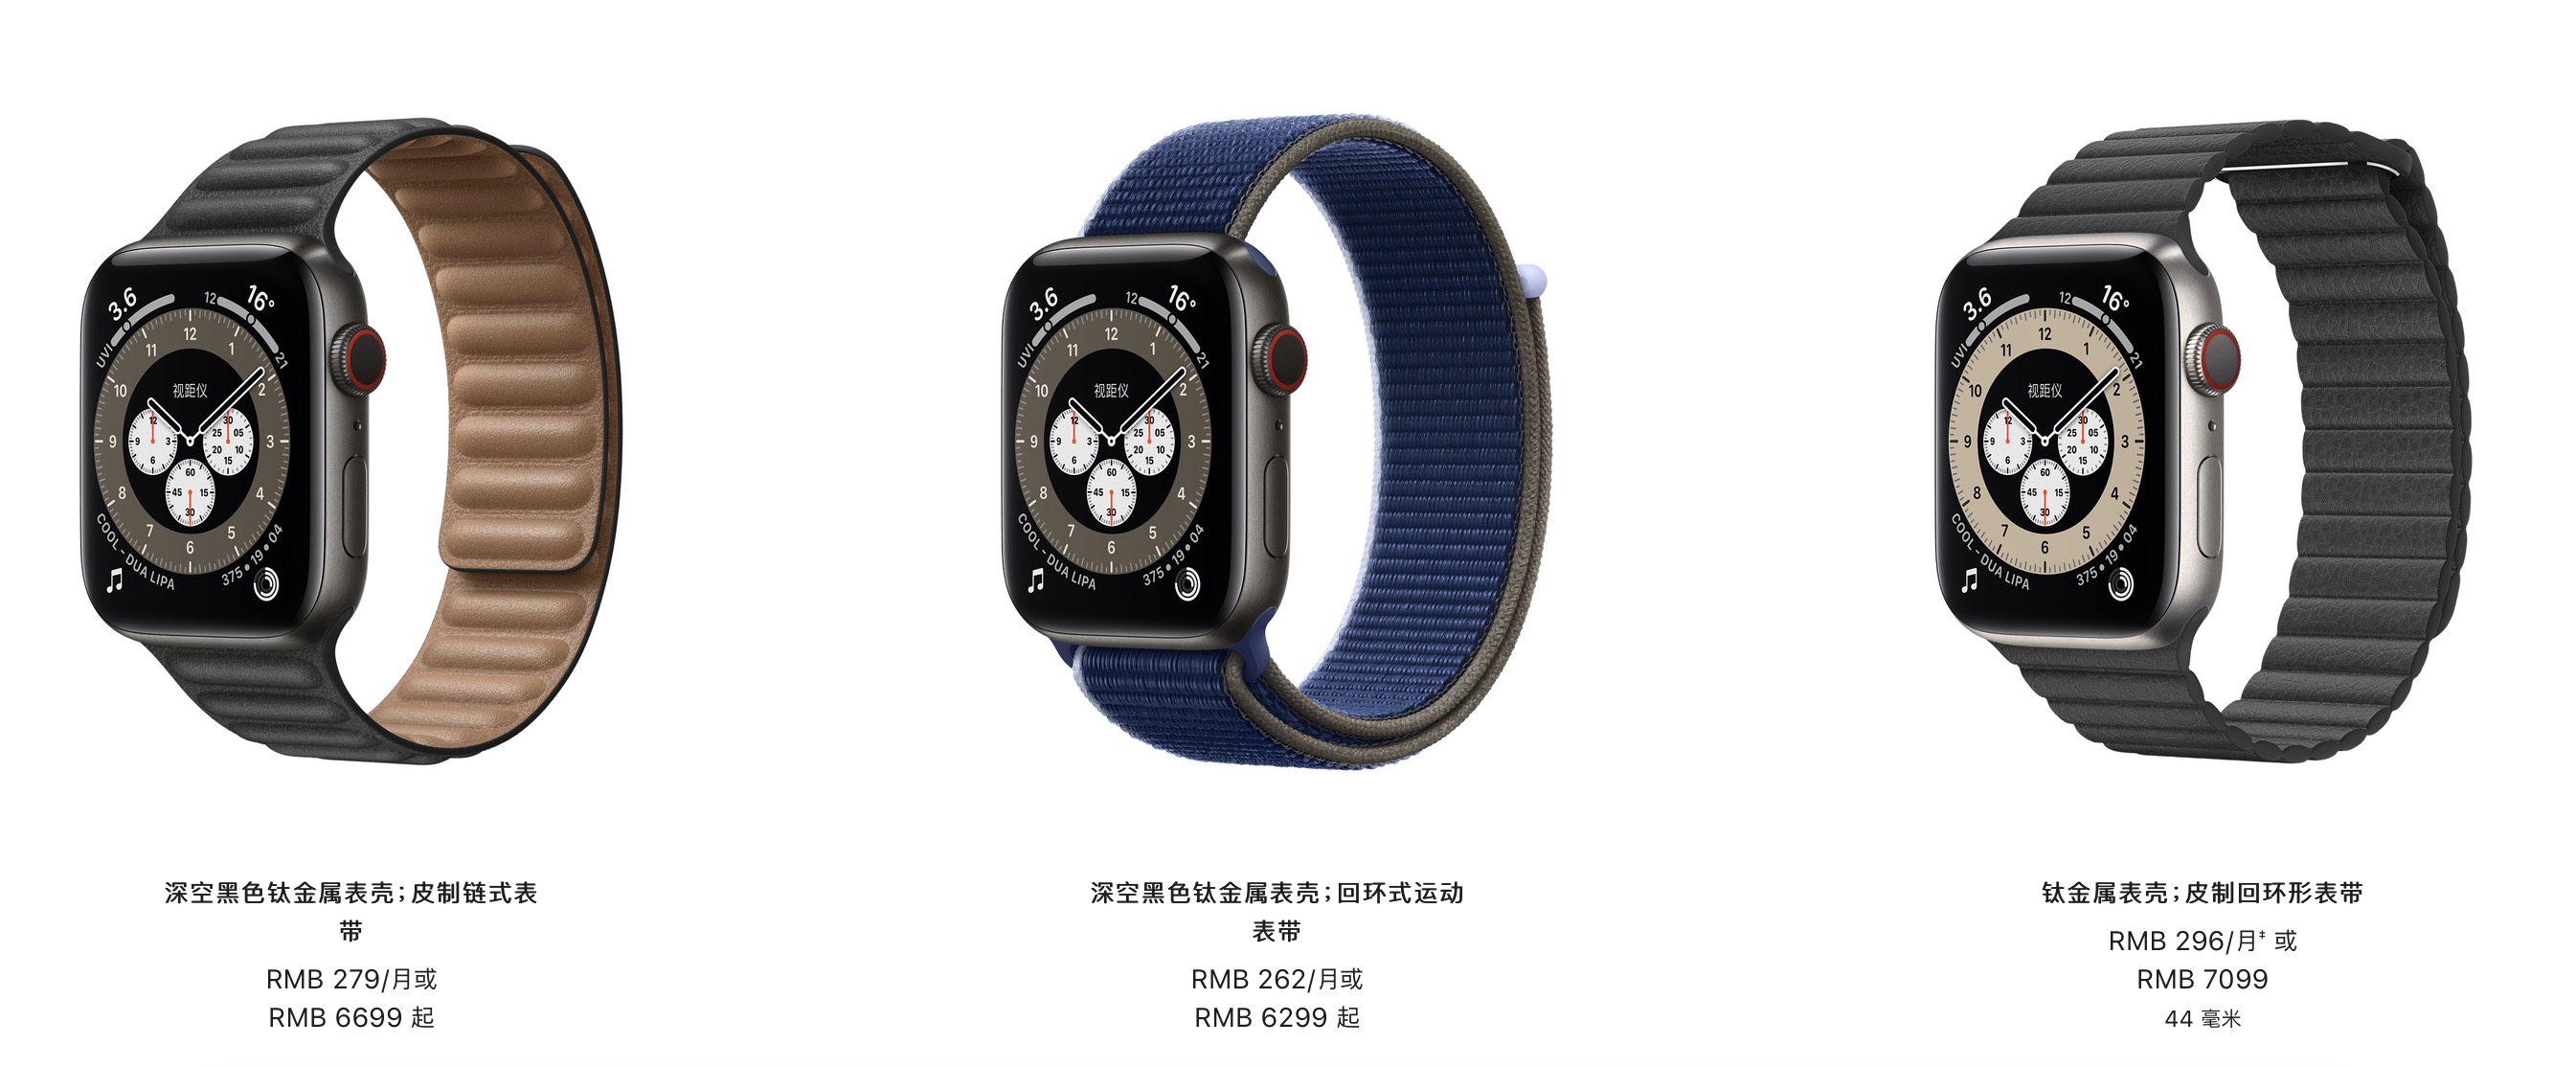 价格高昂的钛金属版 Apple Watch Edition 在部分地区缺货